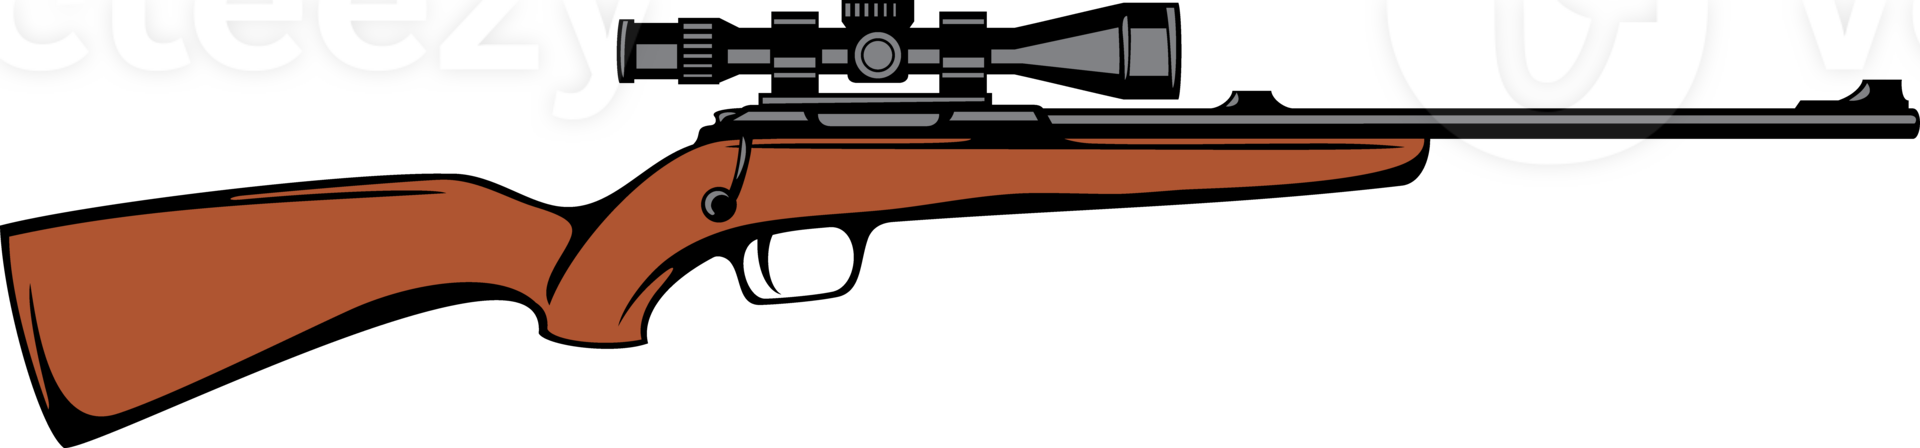 Jagd Gewehr mit teleskopisch Sicht. Scharfschütze png Illustration.